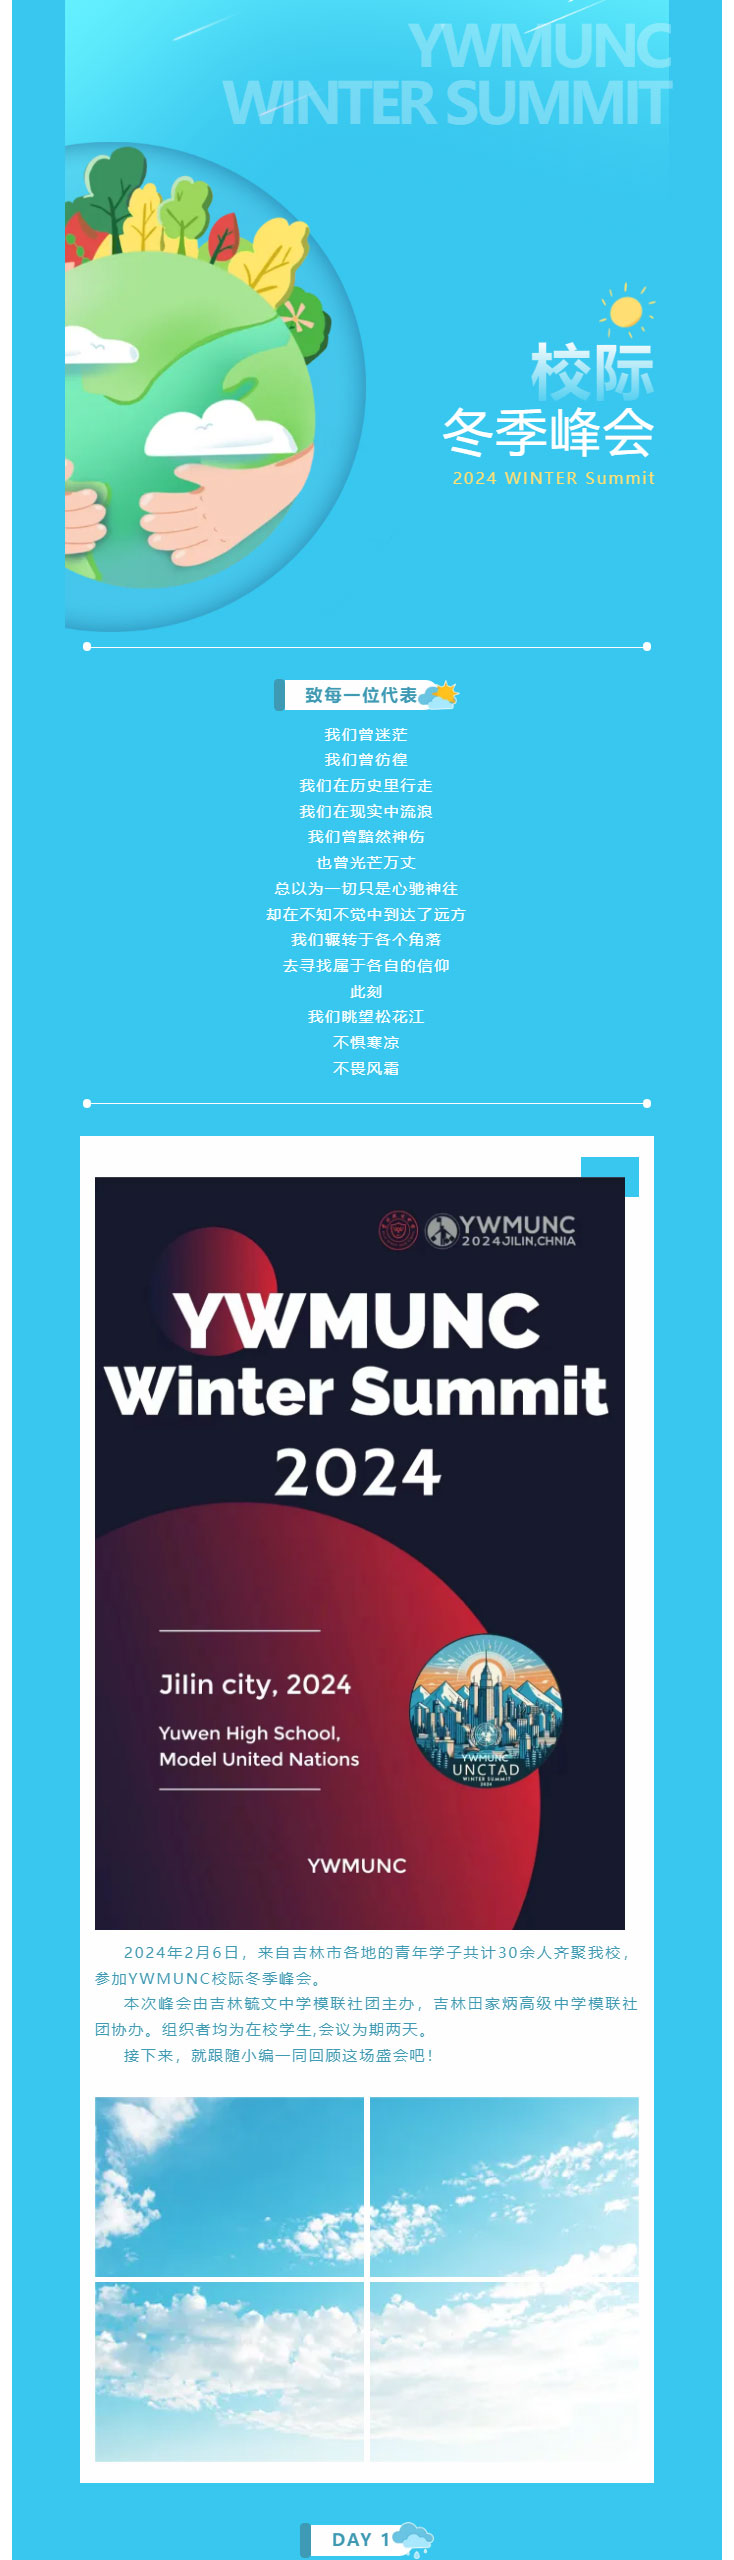 【毓见】青春力量-_-2024吉林市校际模拟联合国大会冬季峰会2_01.jpg